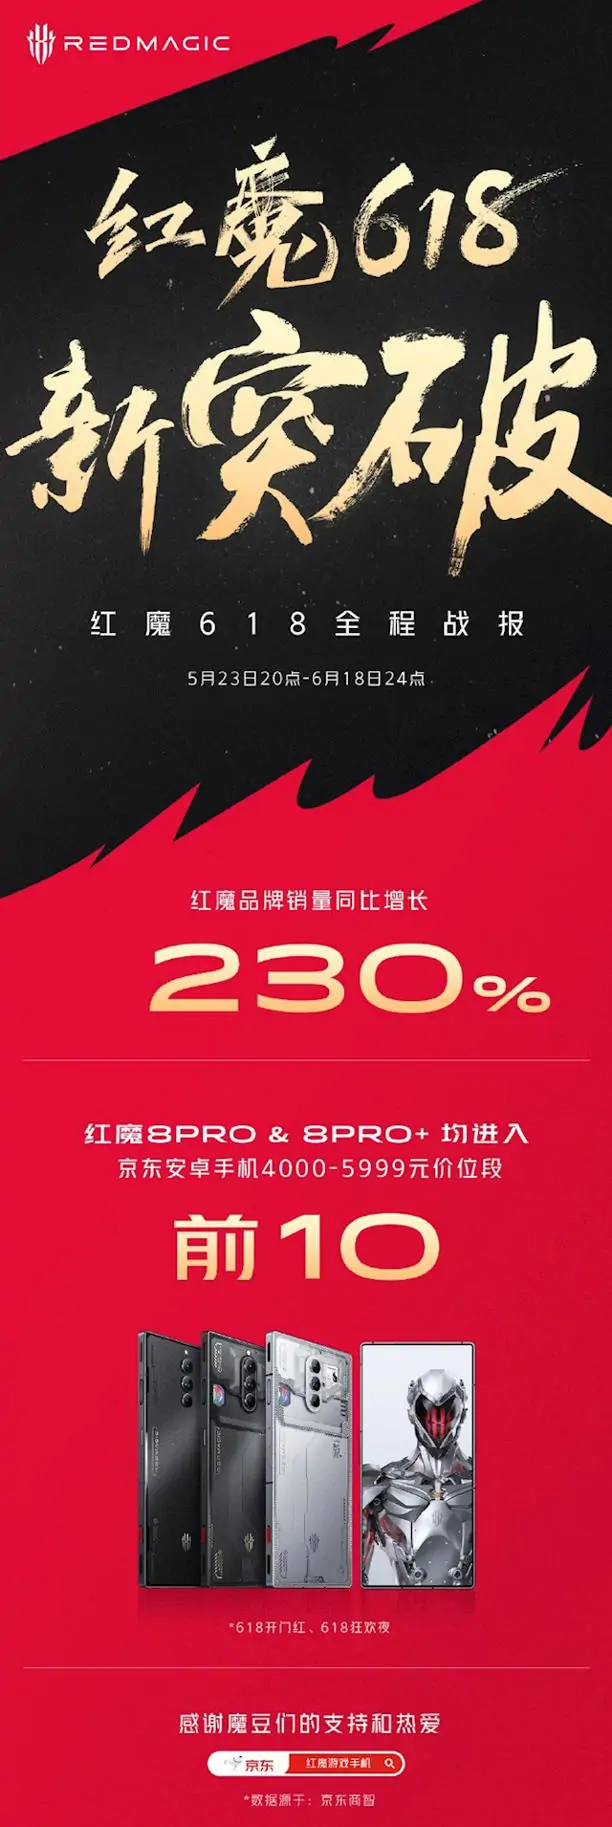 红魔618刷新战绩：销量增长230%、红魔8 Pro系列表现亮眼